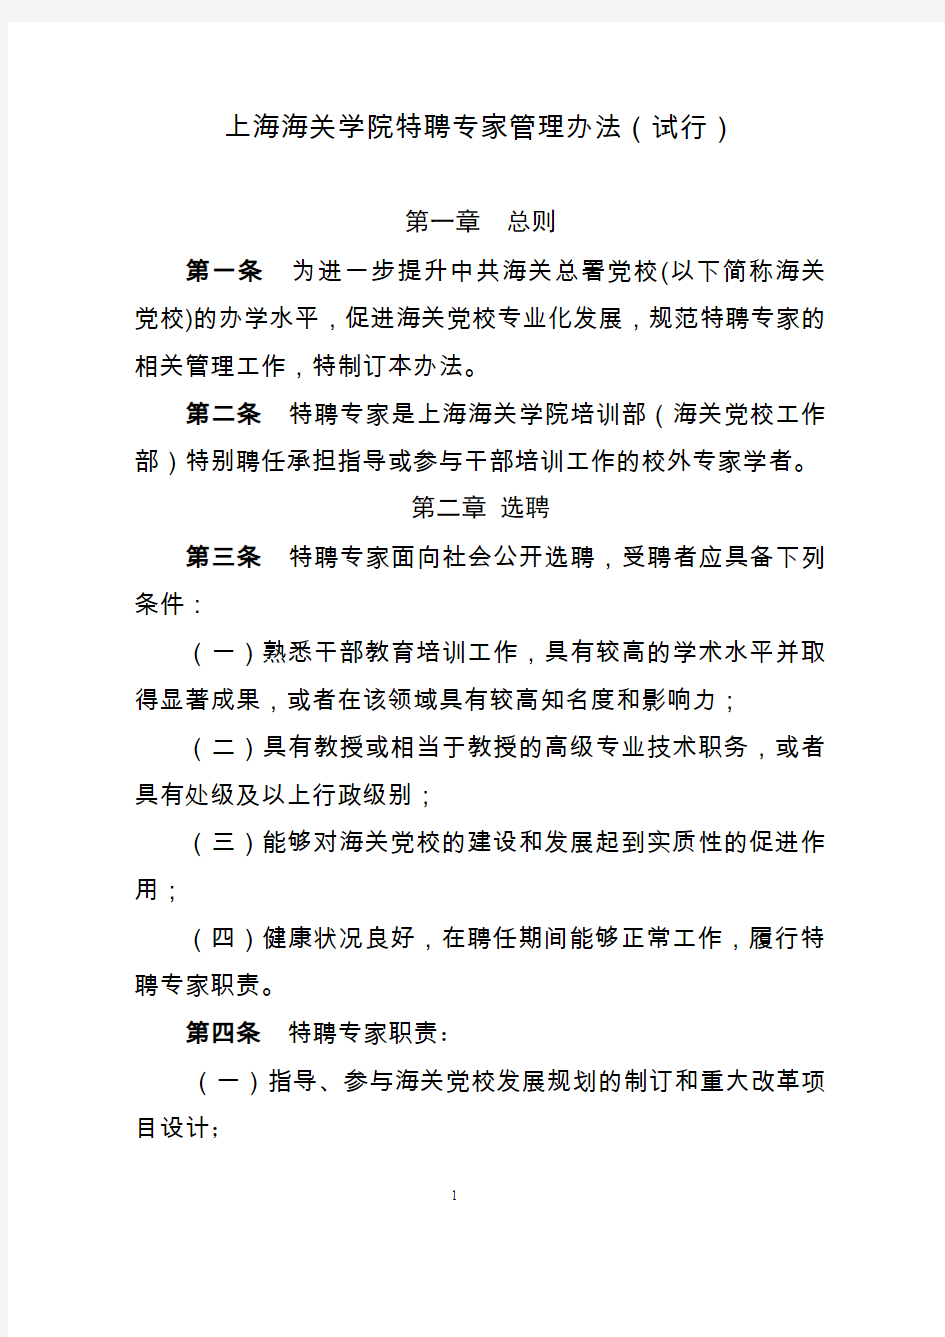 上海海关学院特聘专家管理办法试行